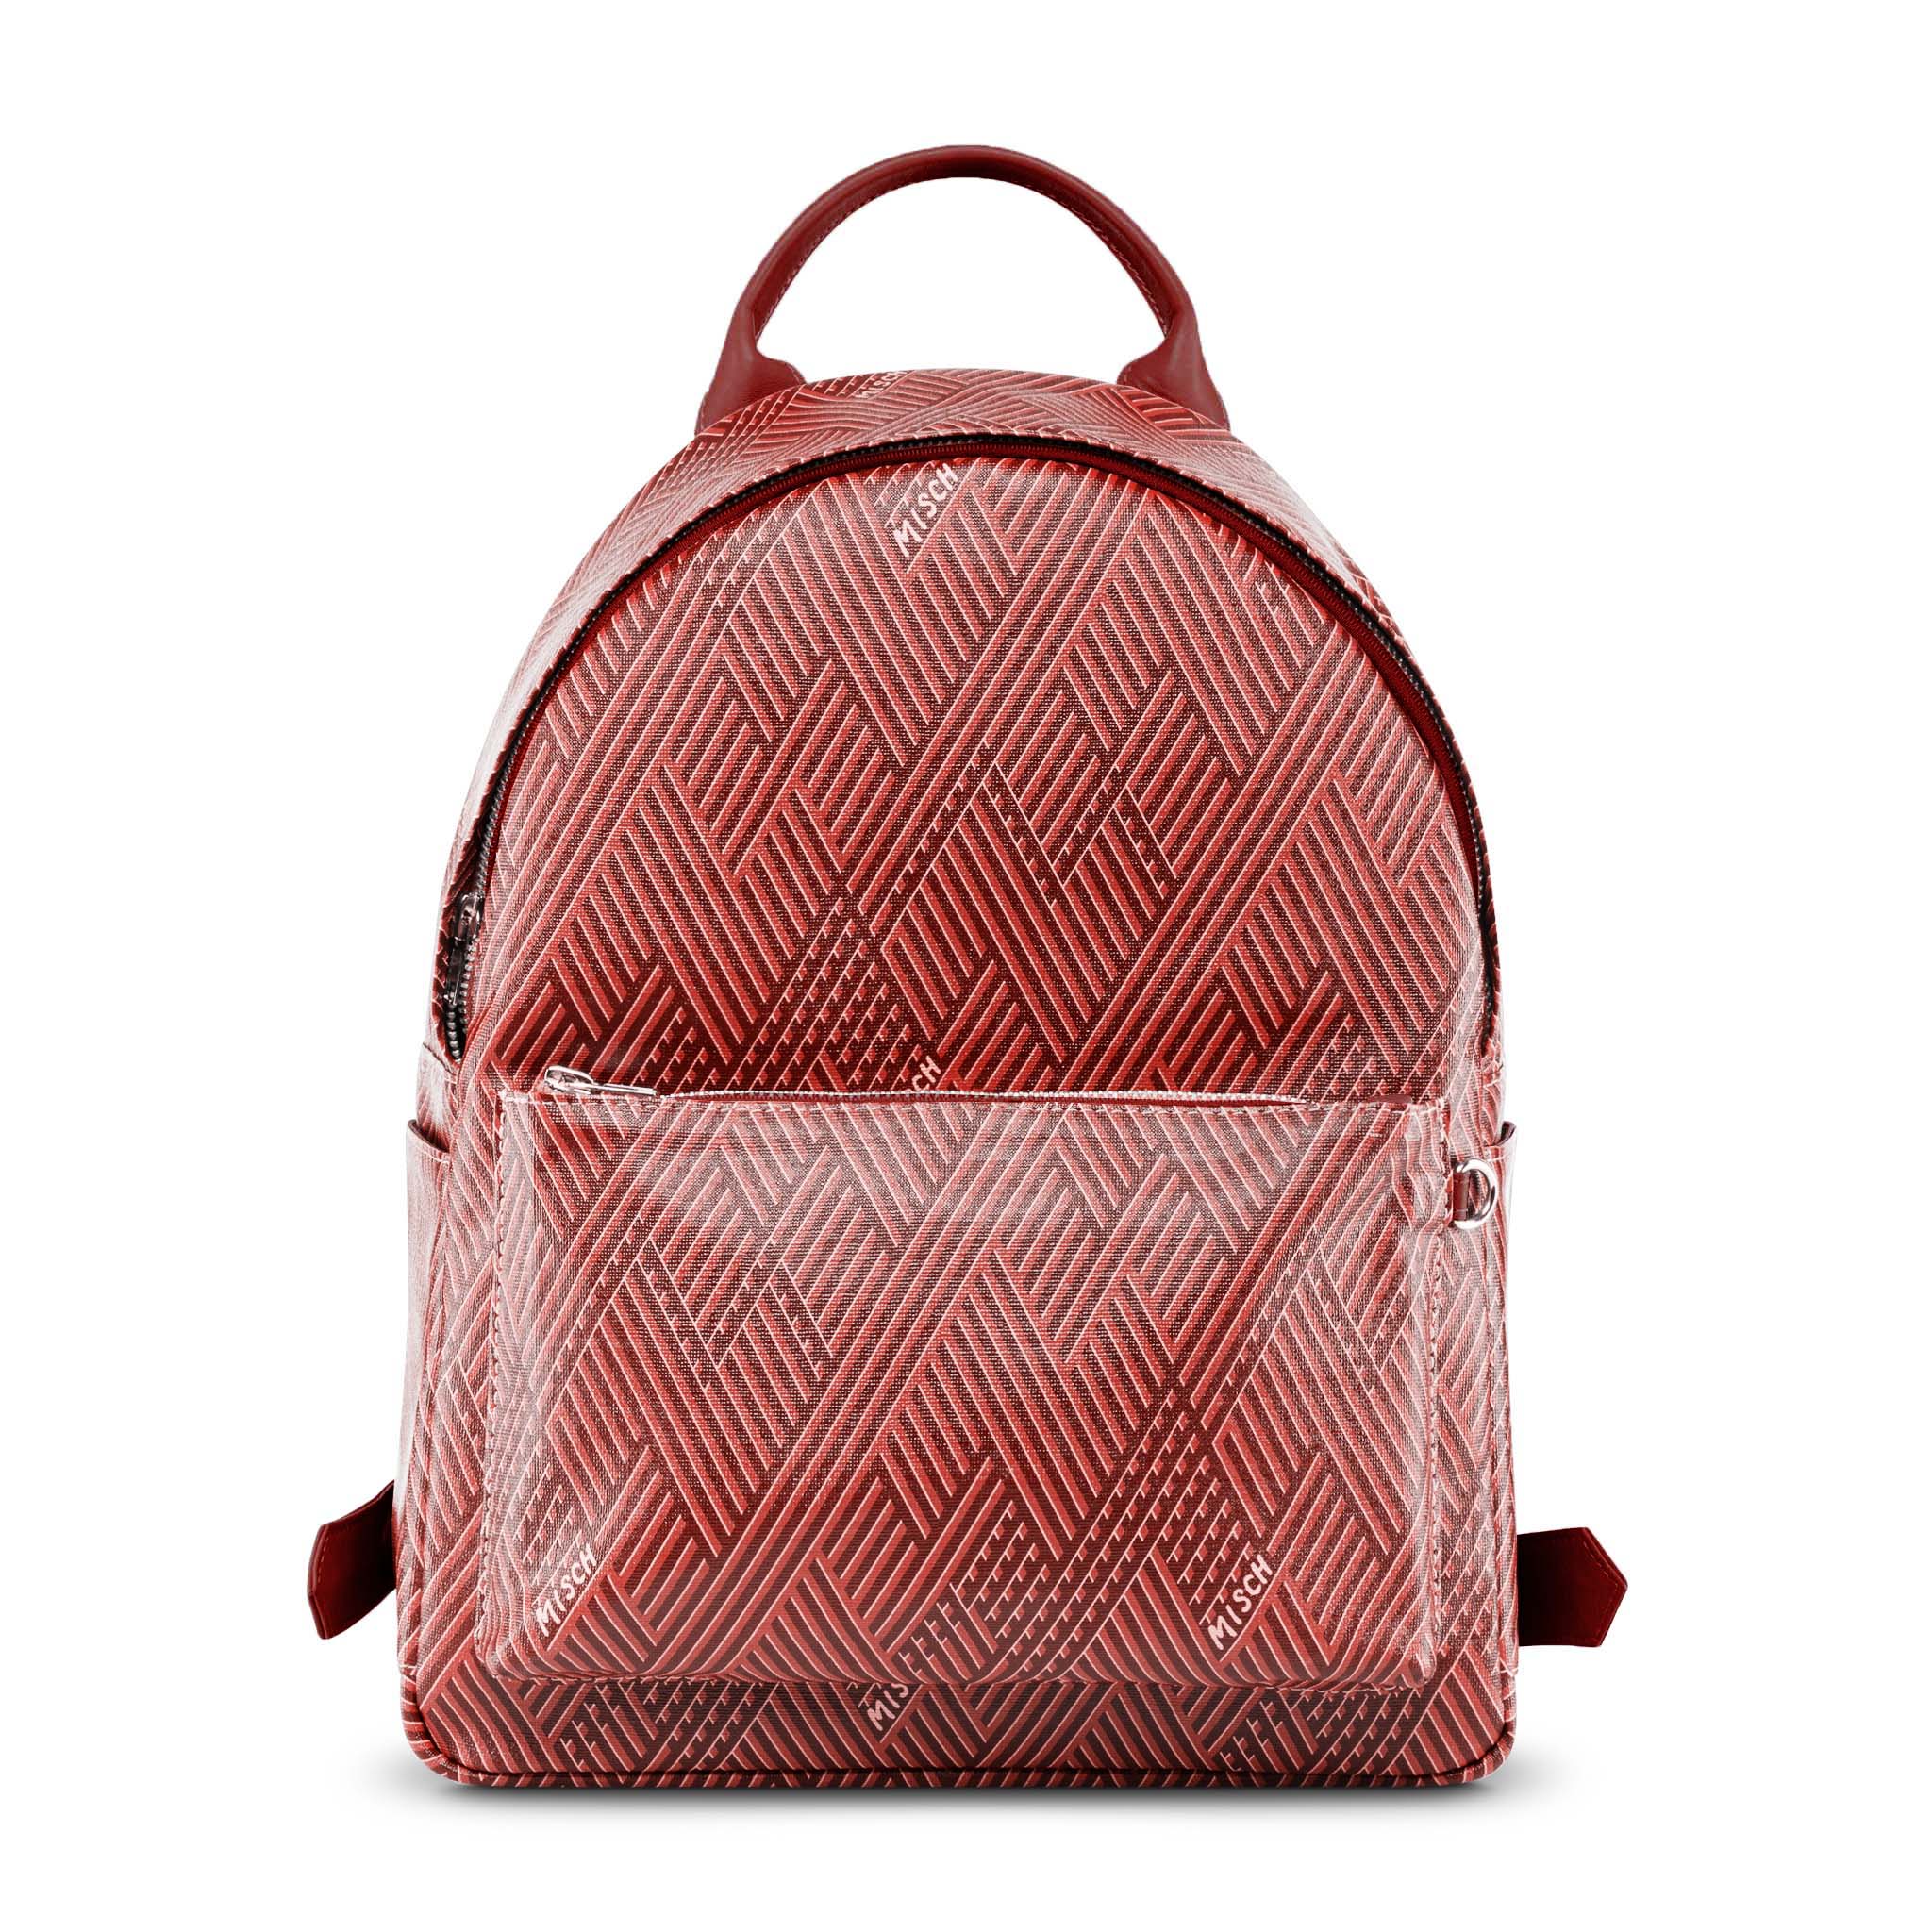 Turnered Red (V) leather bag